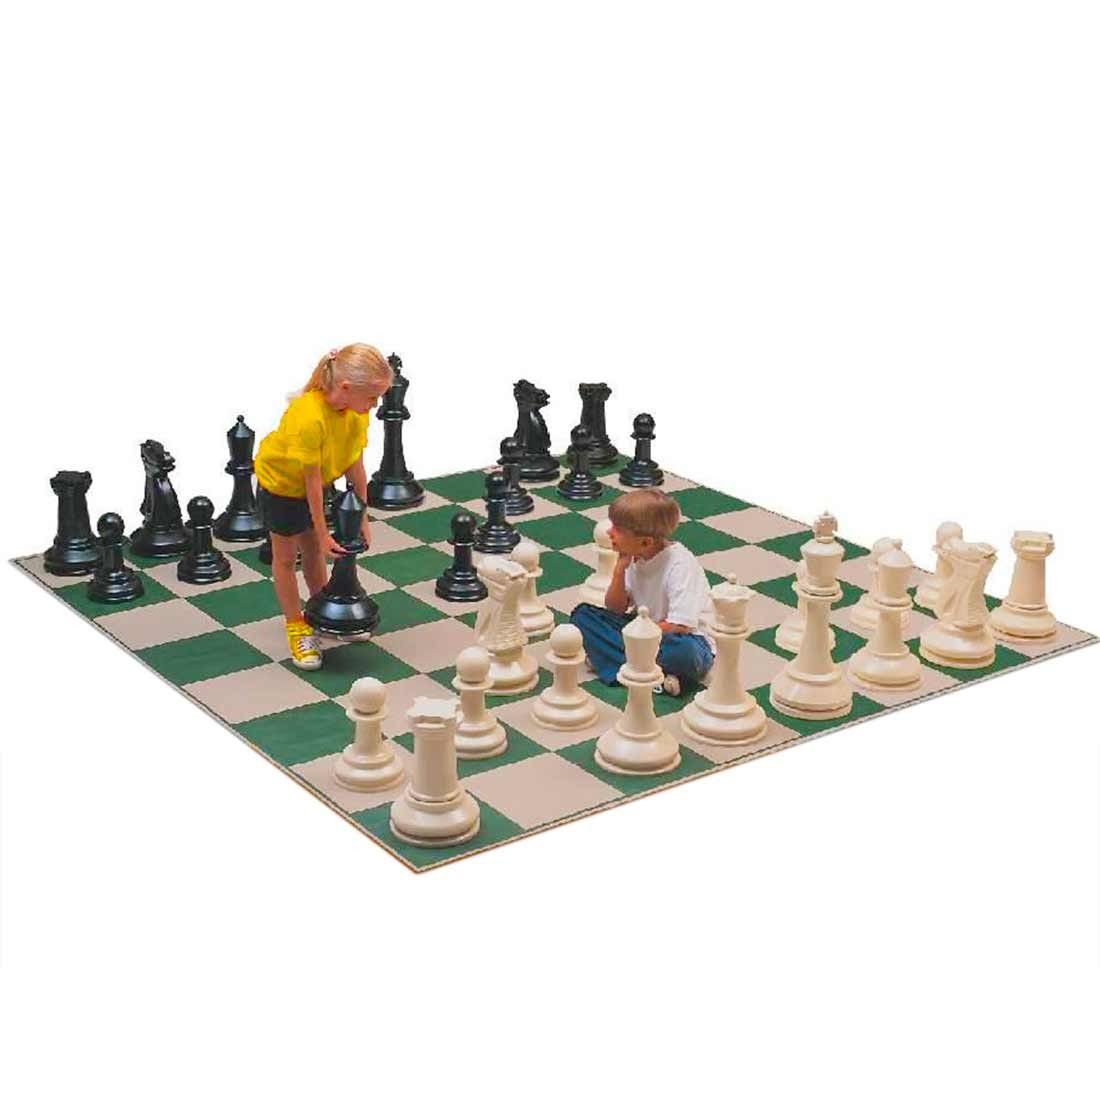 Xadrez Gigante: Jogo de Xadrez em grandes dimensões para eventos, clubes,  jardins e escolas - A lojinha de xadrez que virou mania nacional!